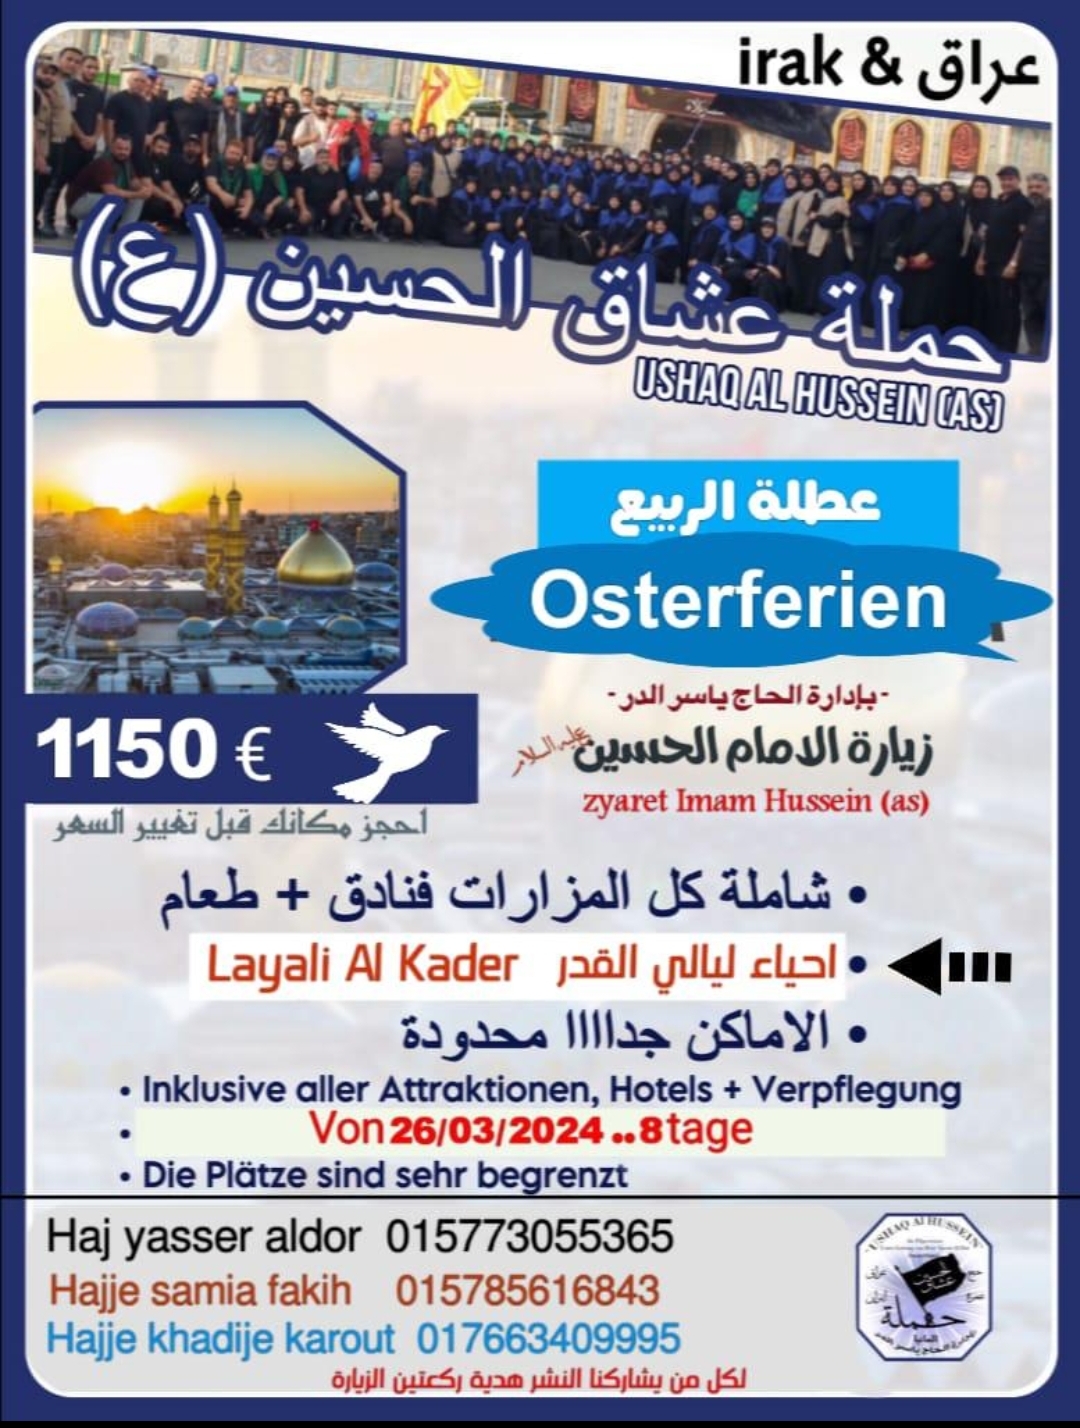 Ushaq al Hussein Ostern nach Irak